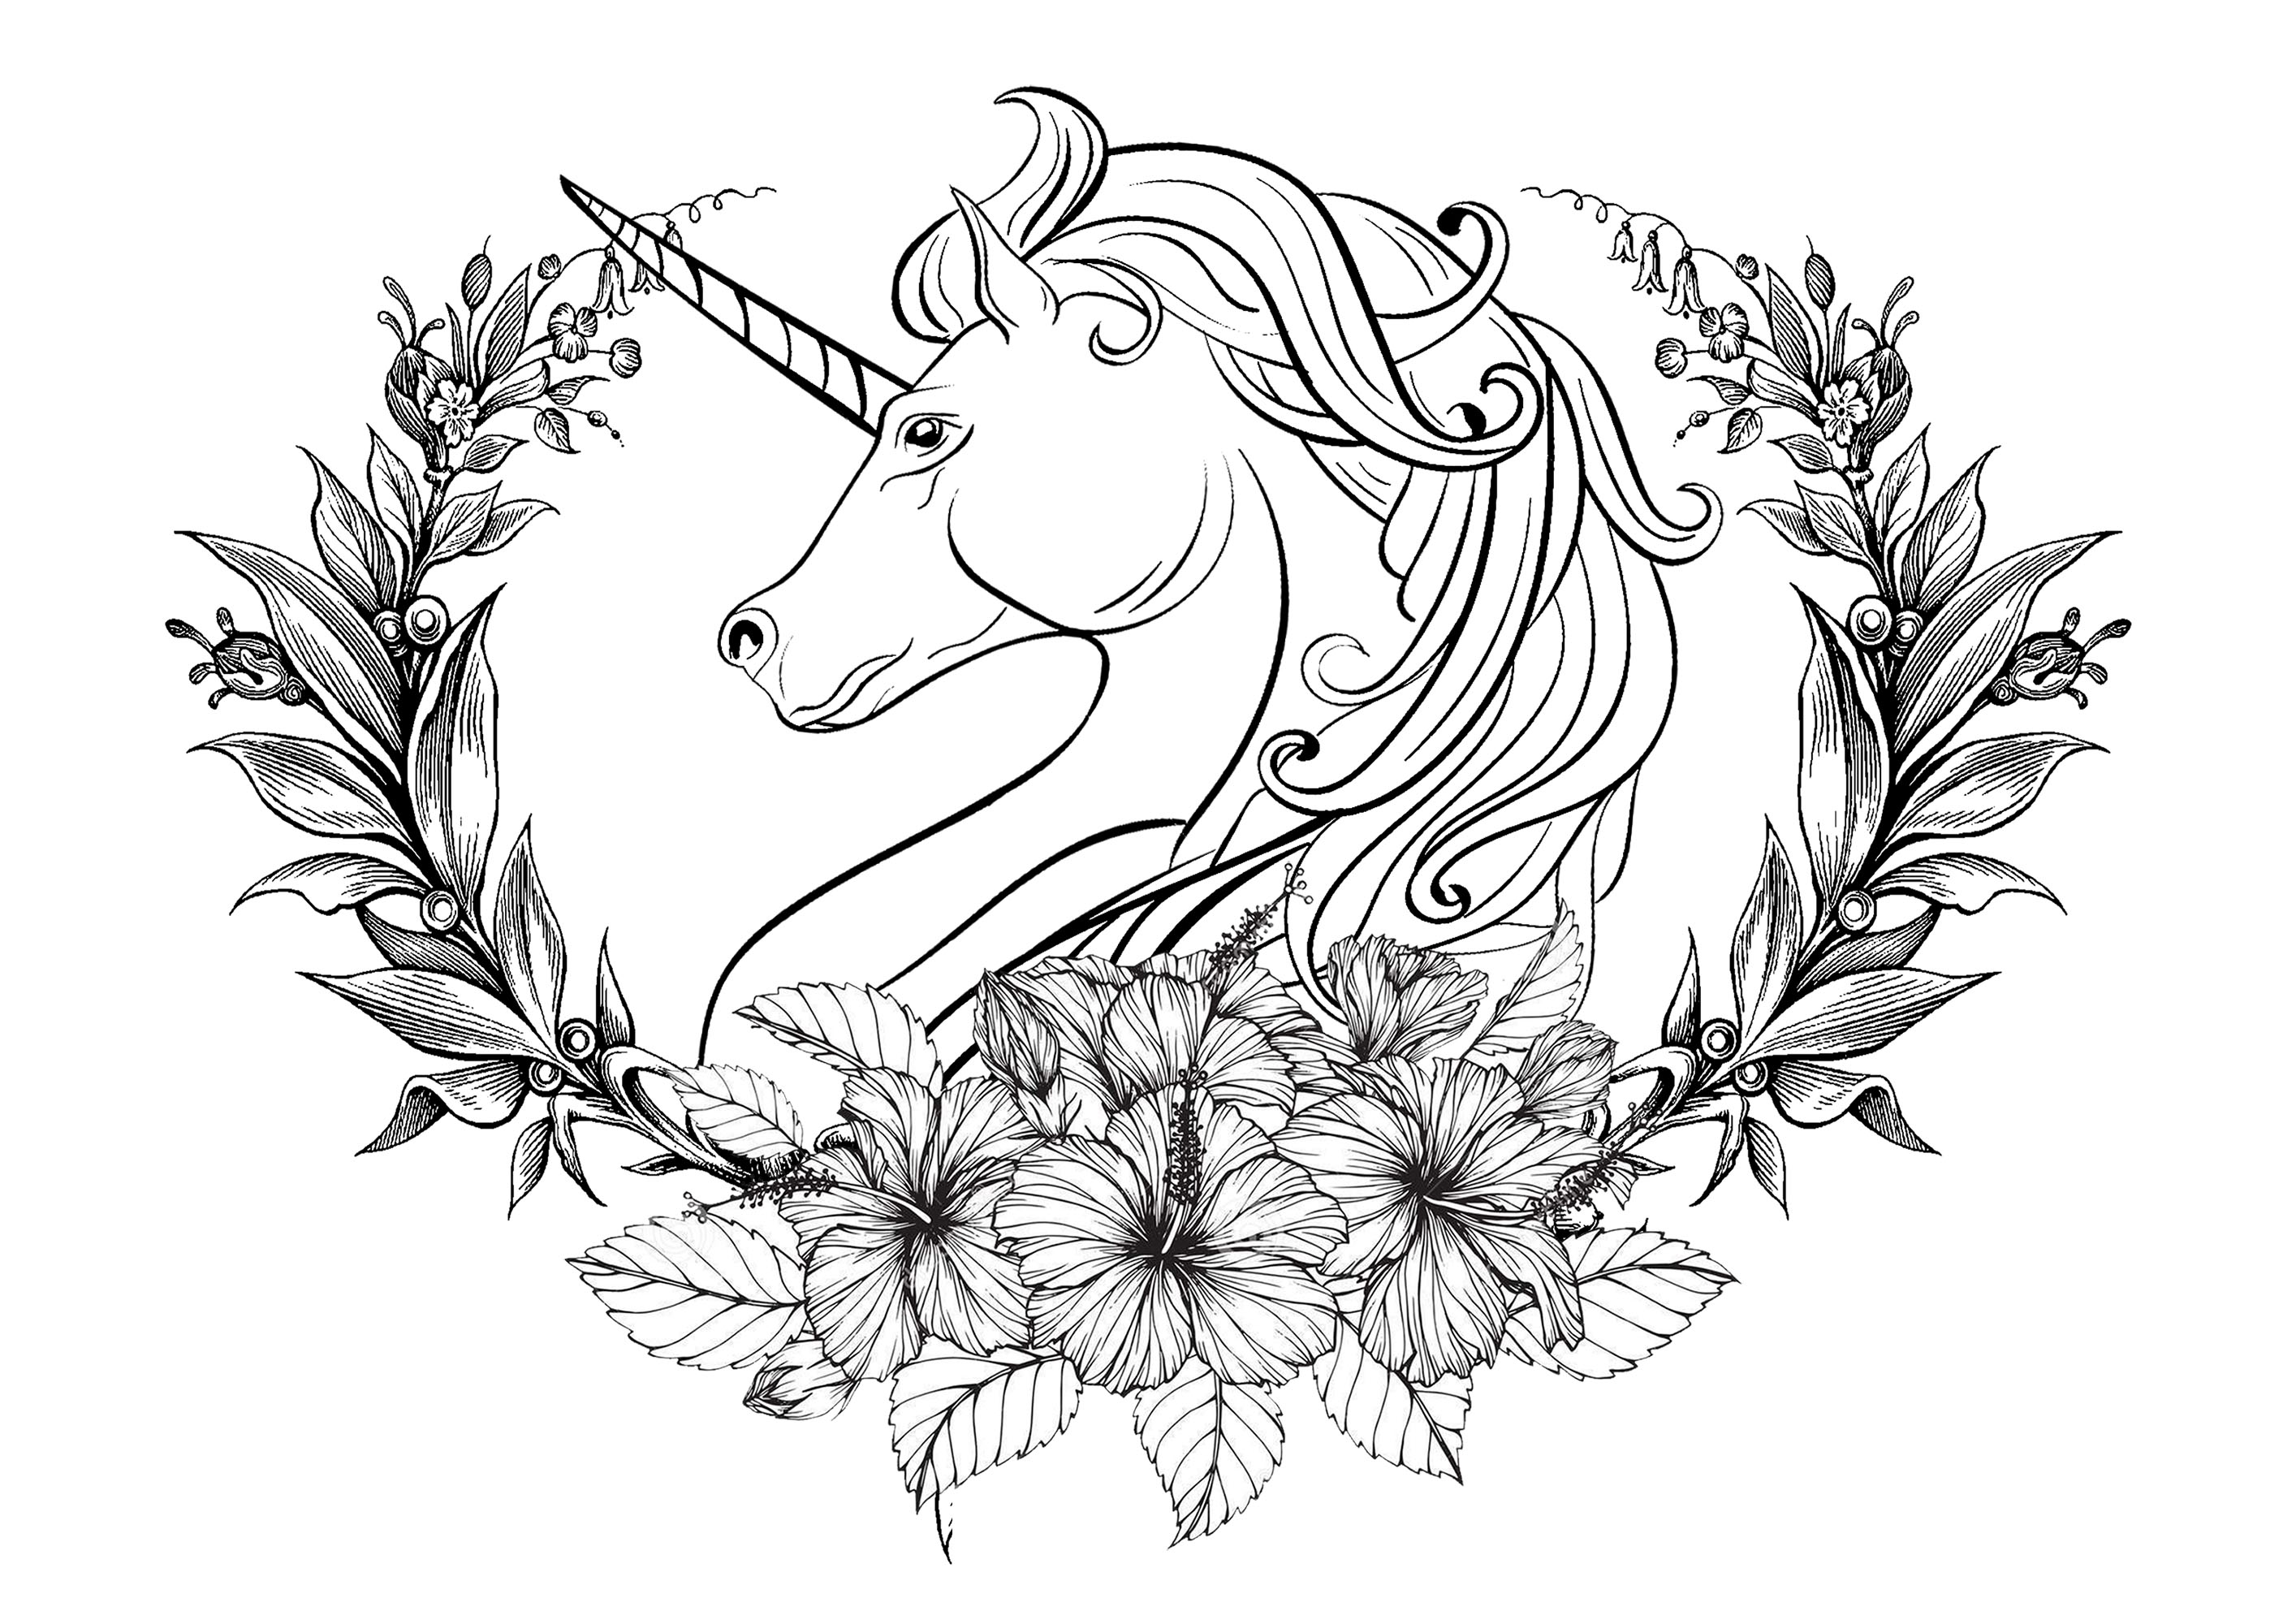 Bella testa di unicorno circondata da una corona di alloro, con fiori di varie dimensioni sul davanti